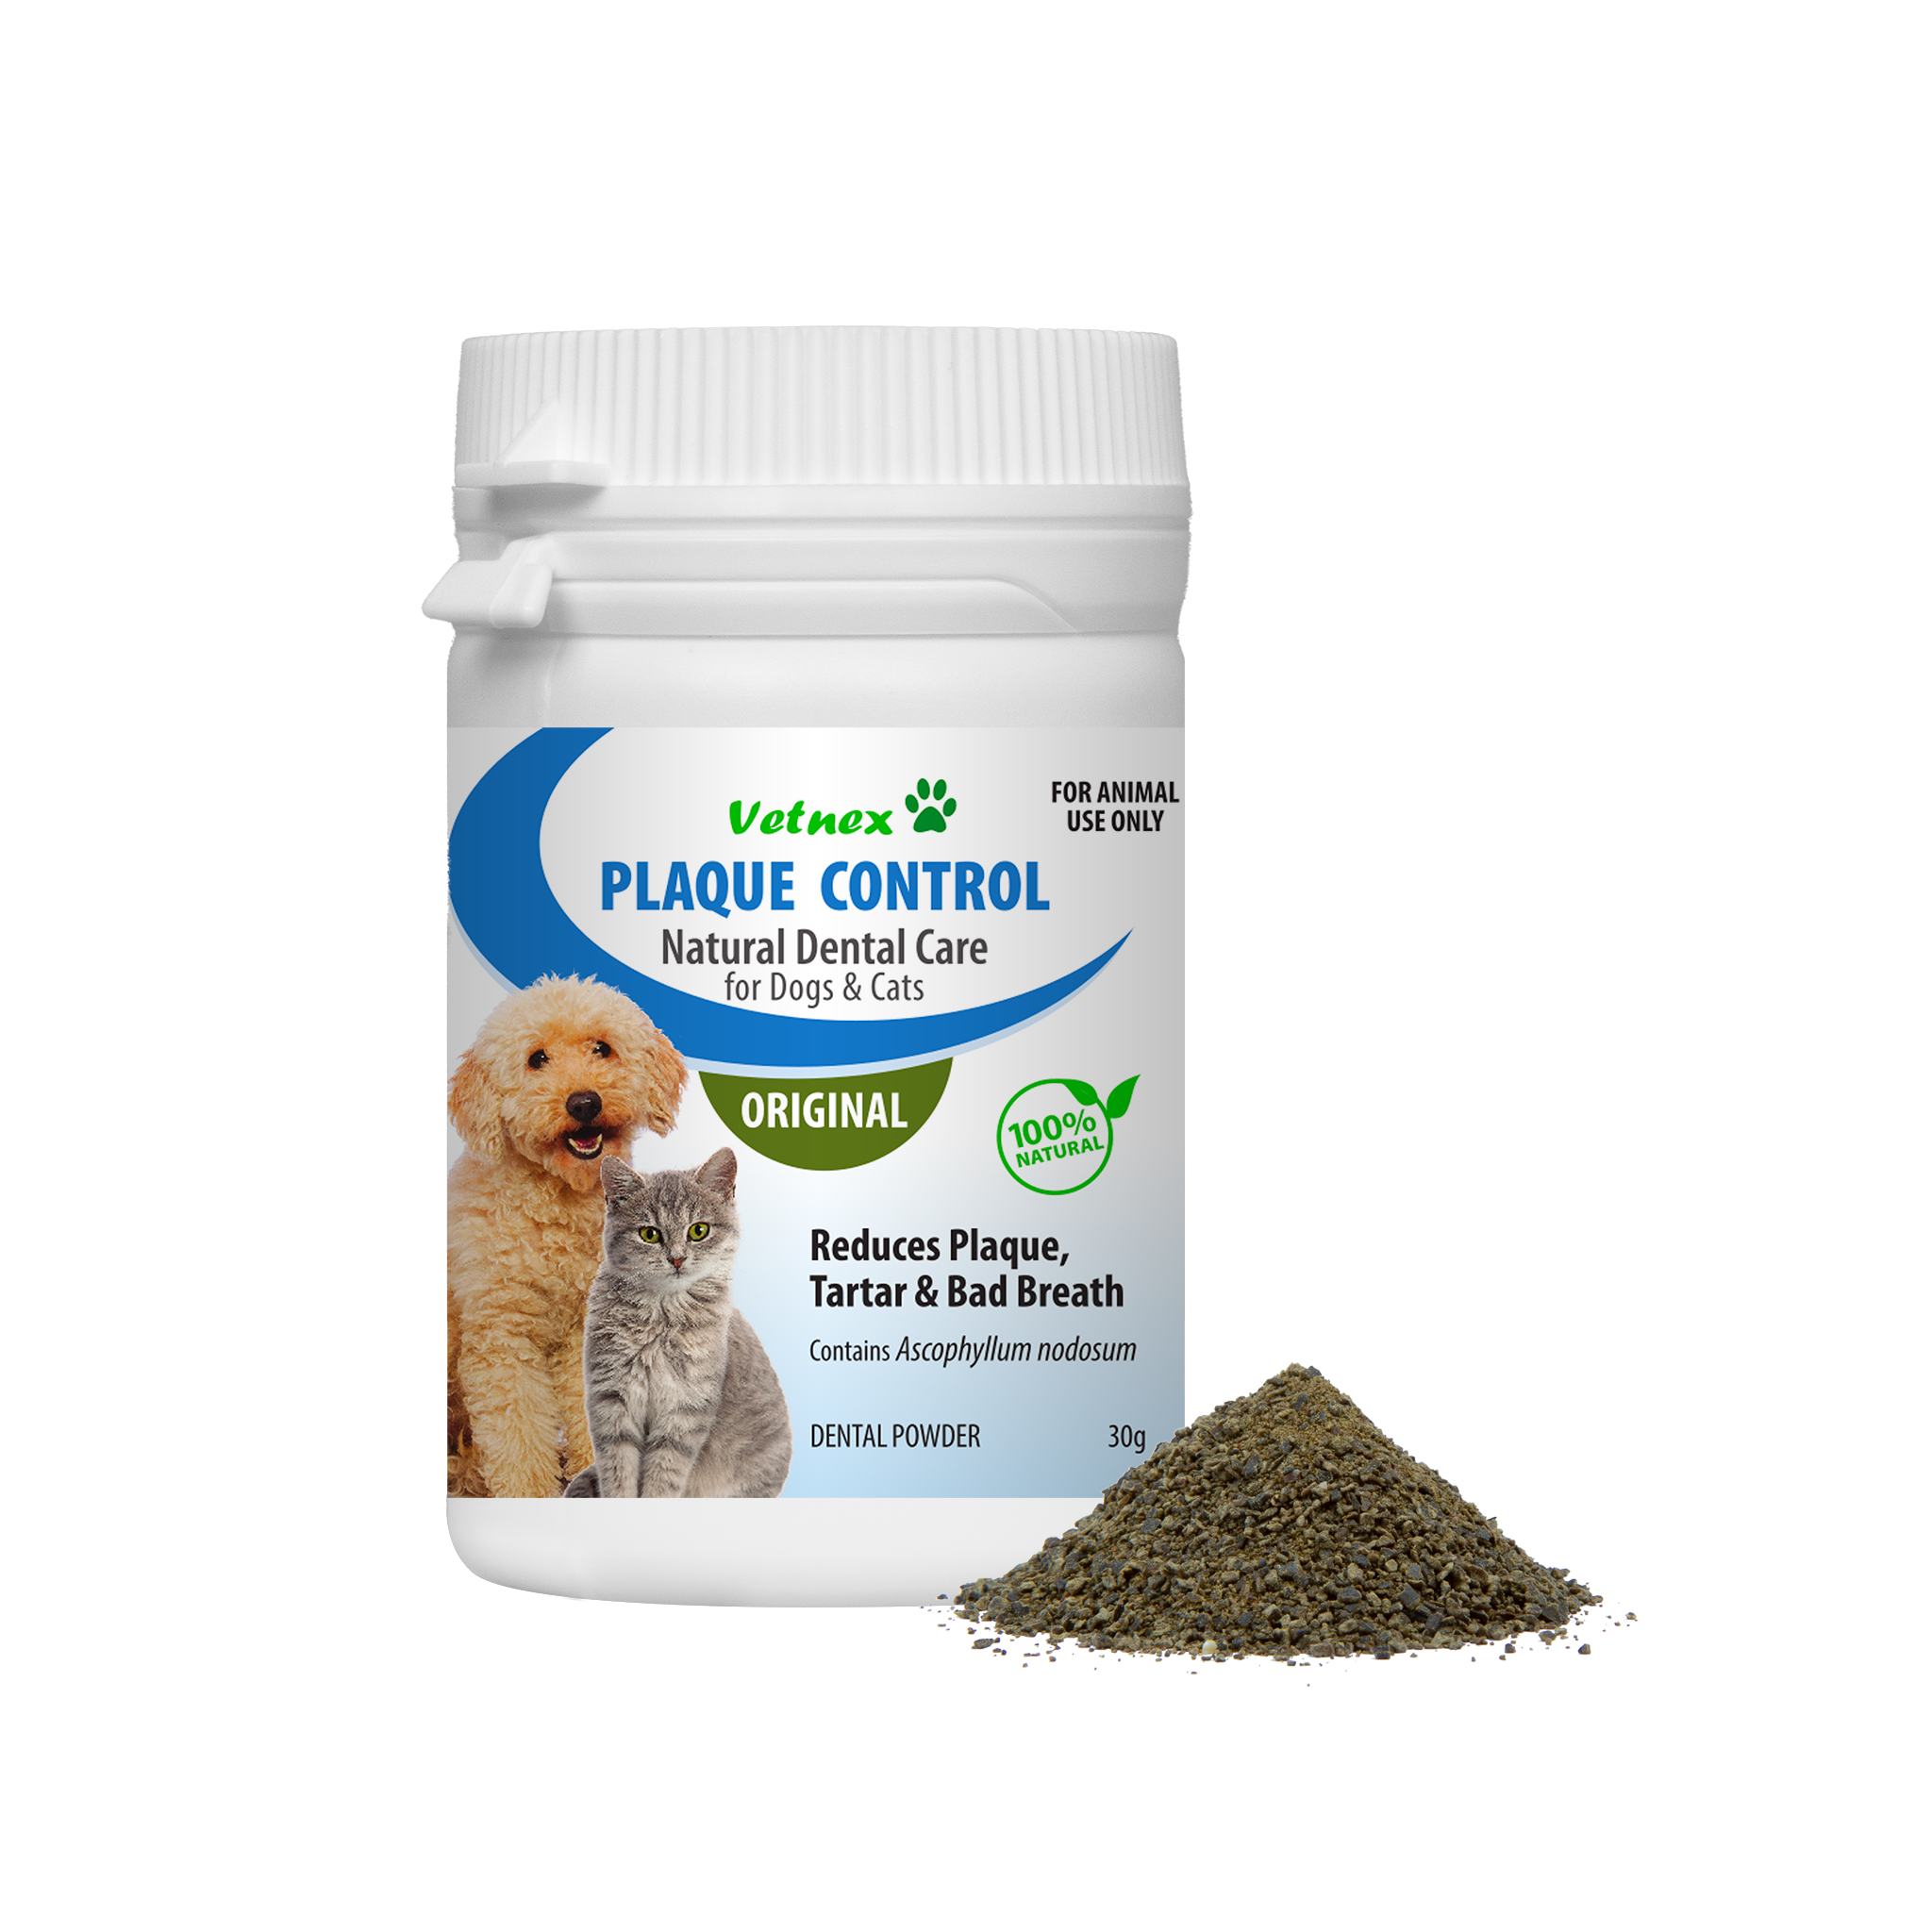 Vetnex Plaque Control Dental Powder (Original) for Dogs & Cats 30g